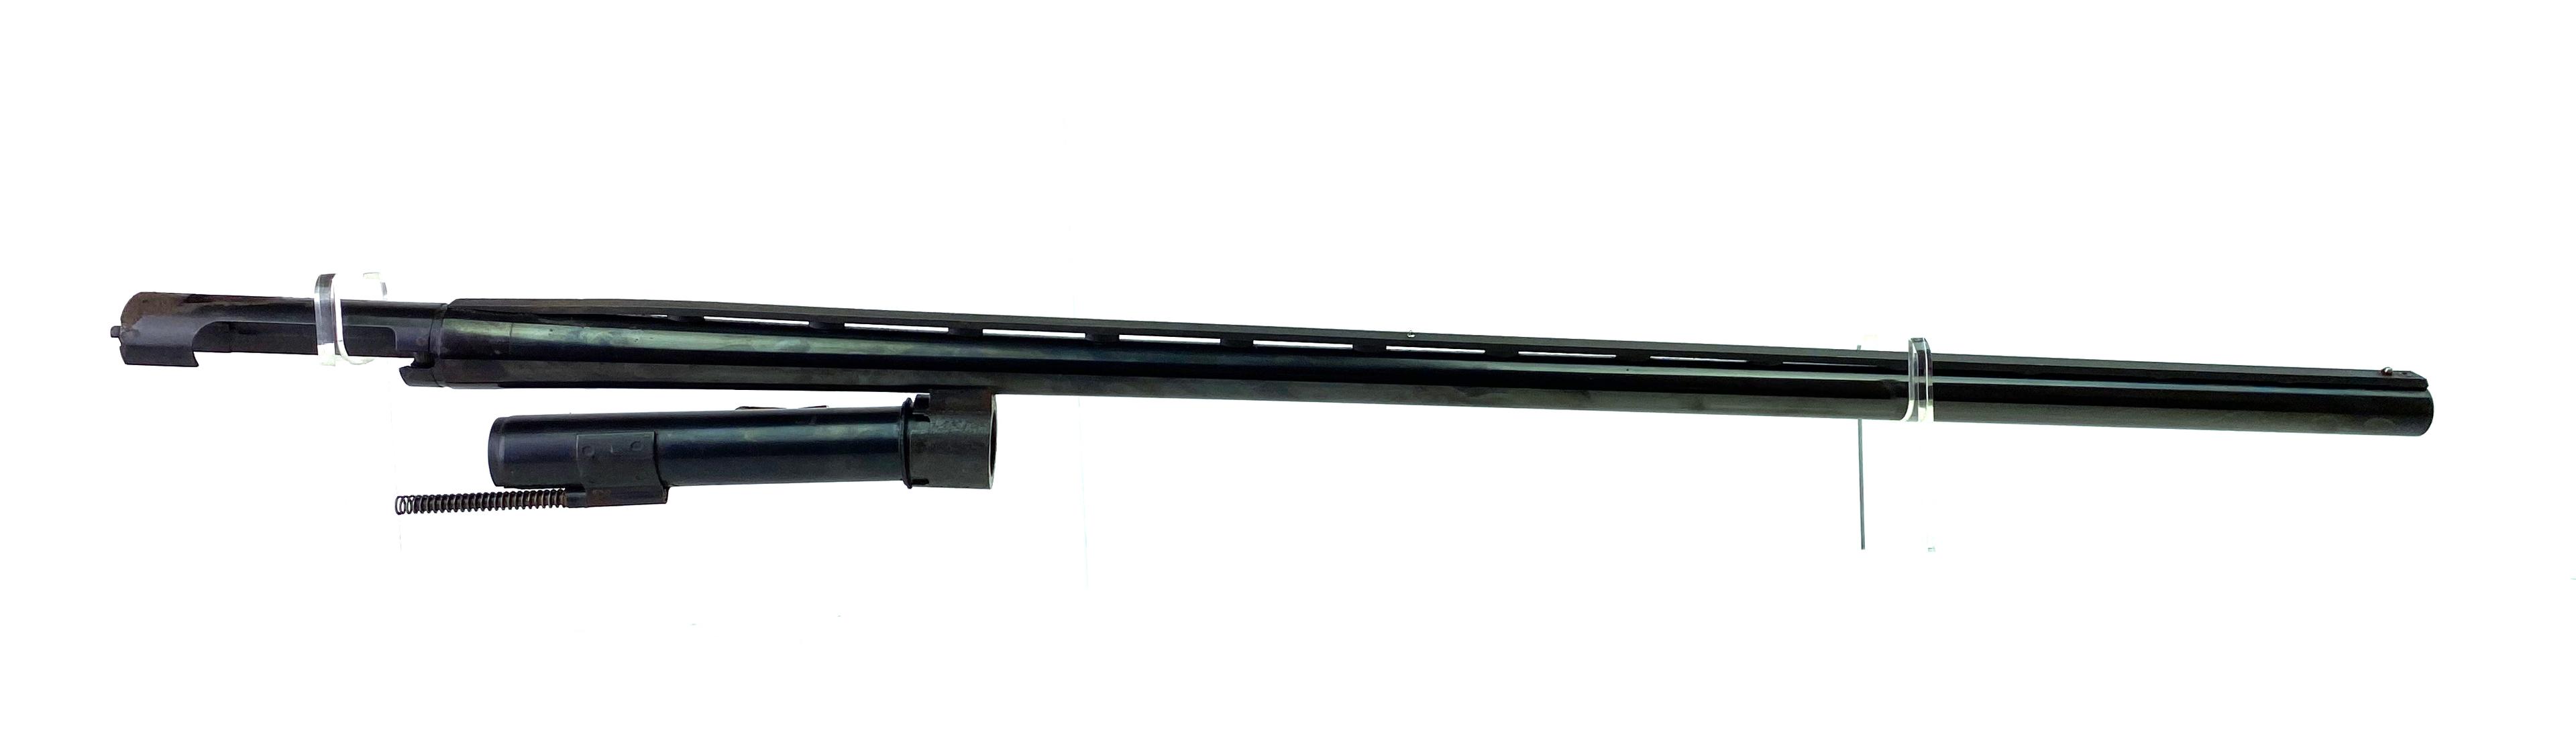 Winchester Super-X Model 1 30" Vent Rib Barrel